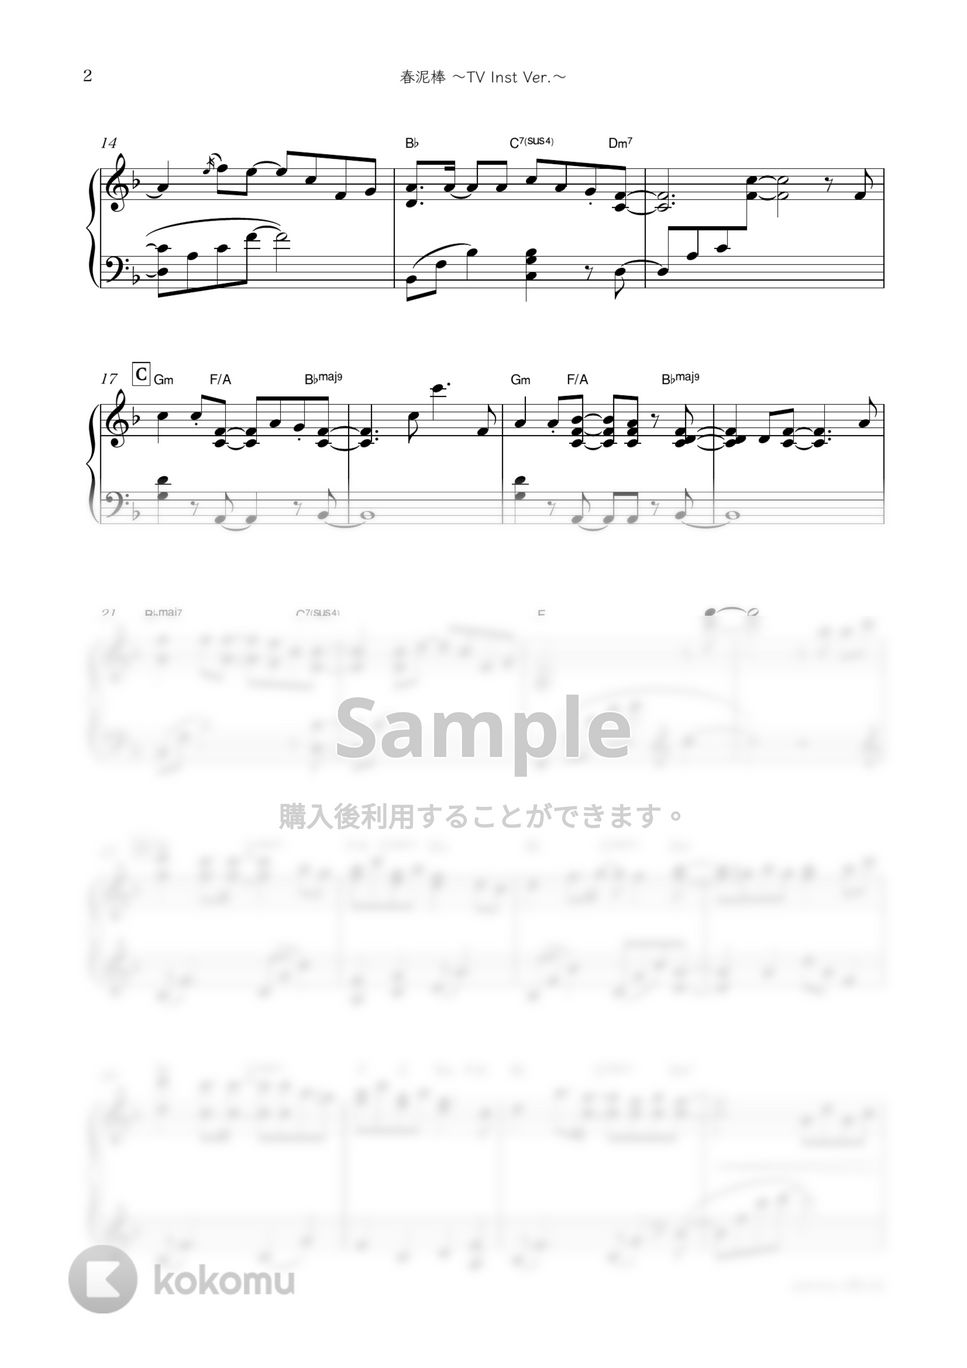 ヨルシカ・ドラマ『夕暮れに、手をつなぐ』OST - 春泥棒 (ドラマで流れたピアノver.) by sammy